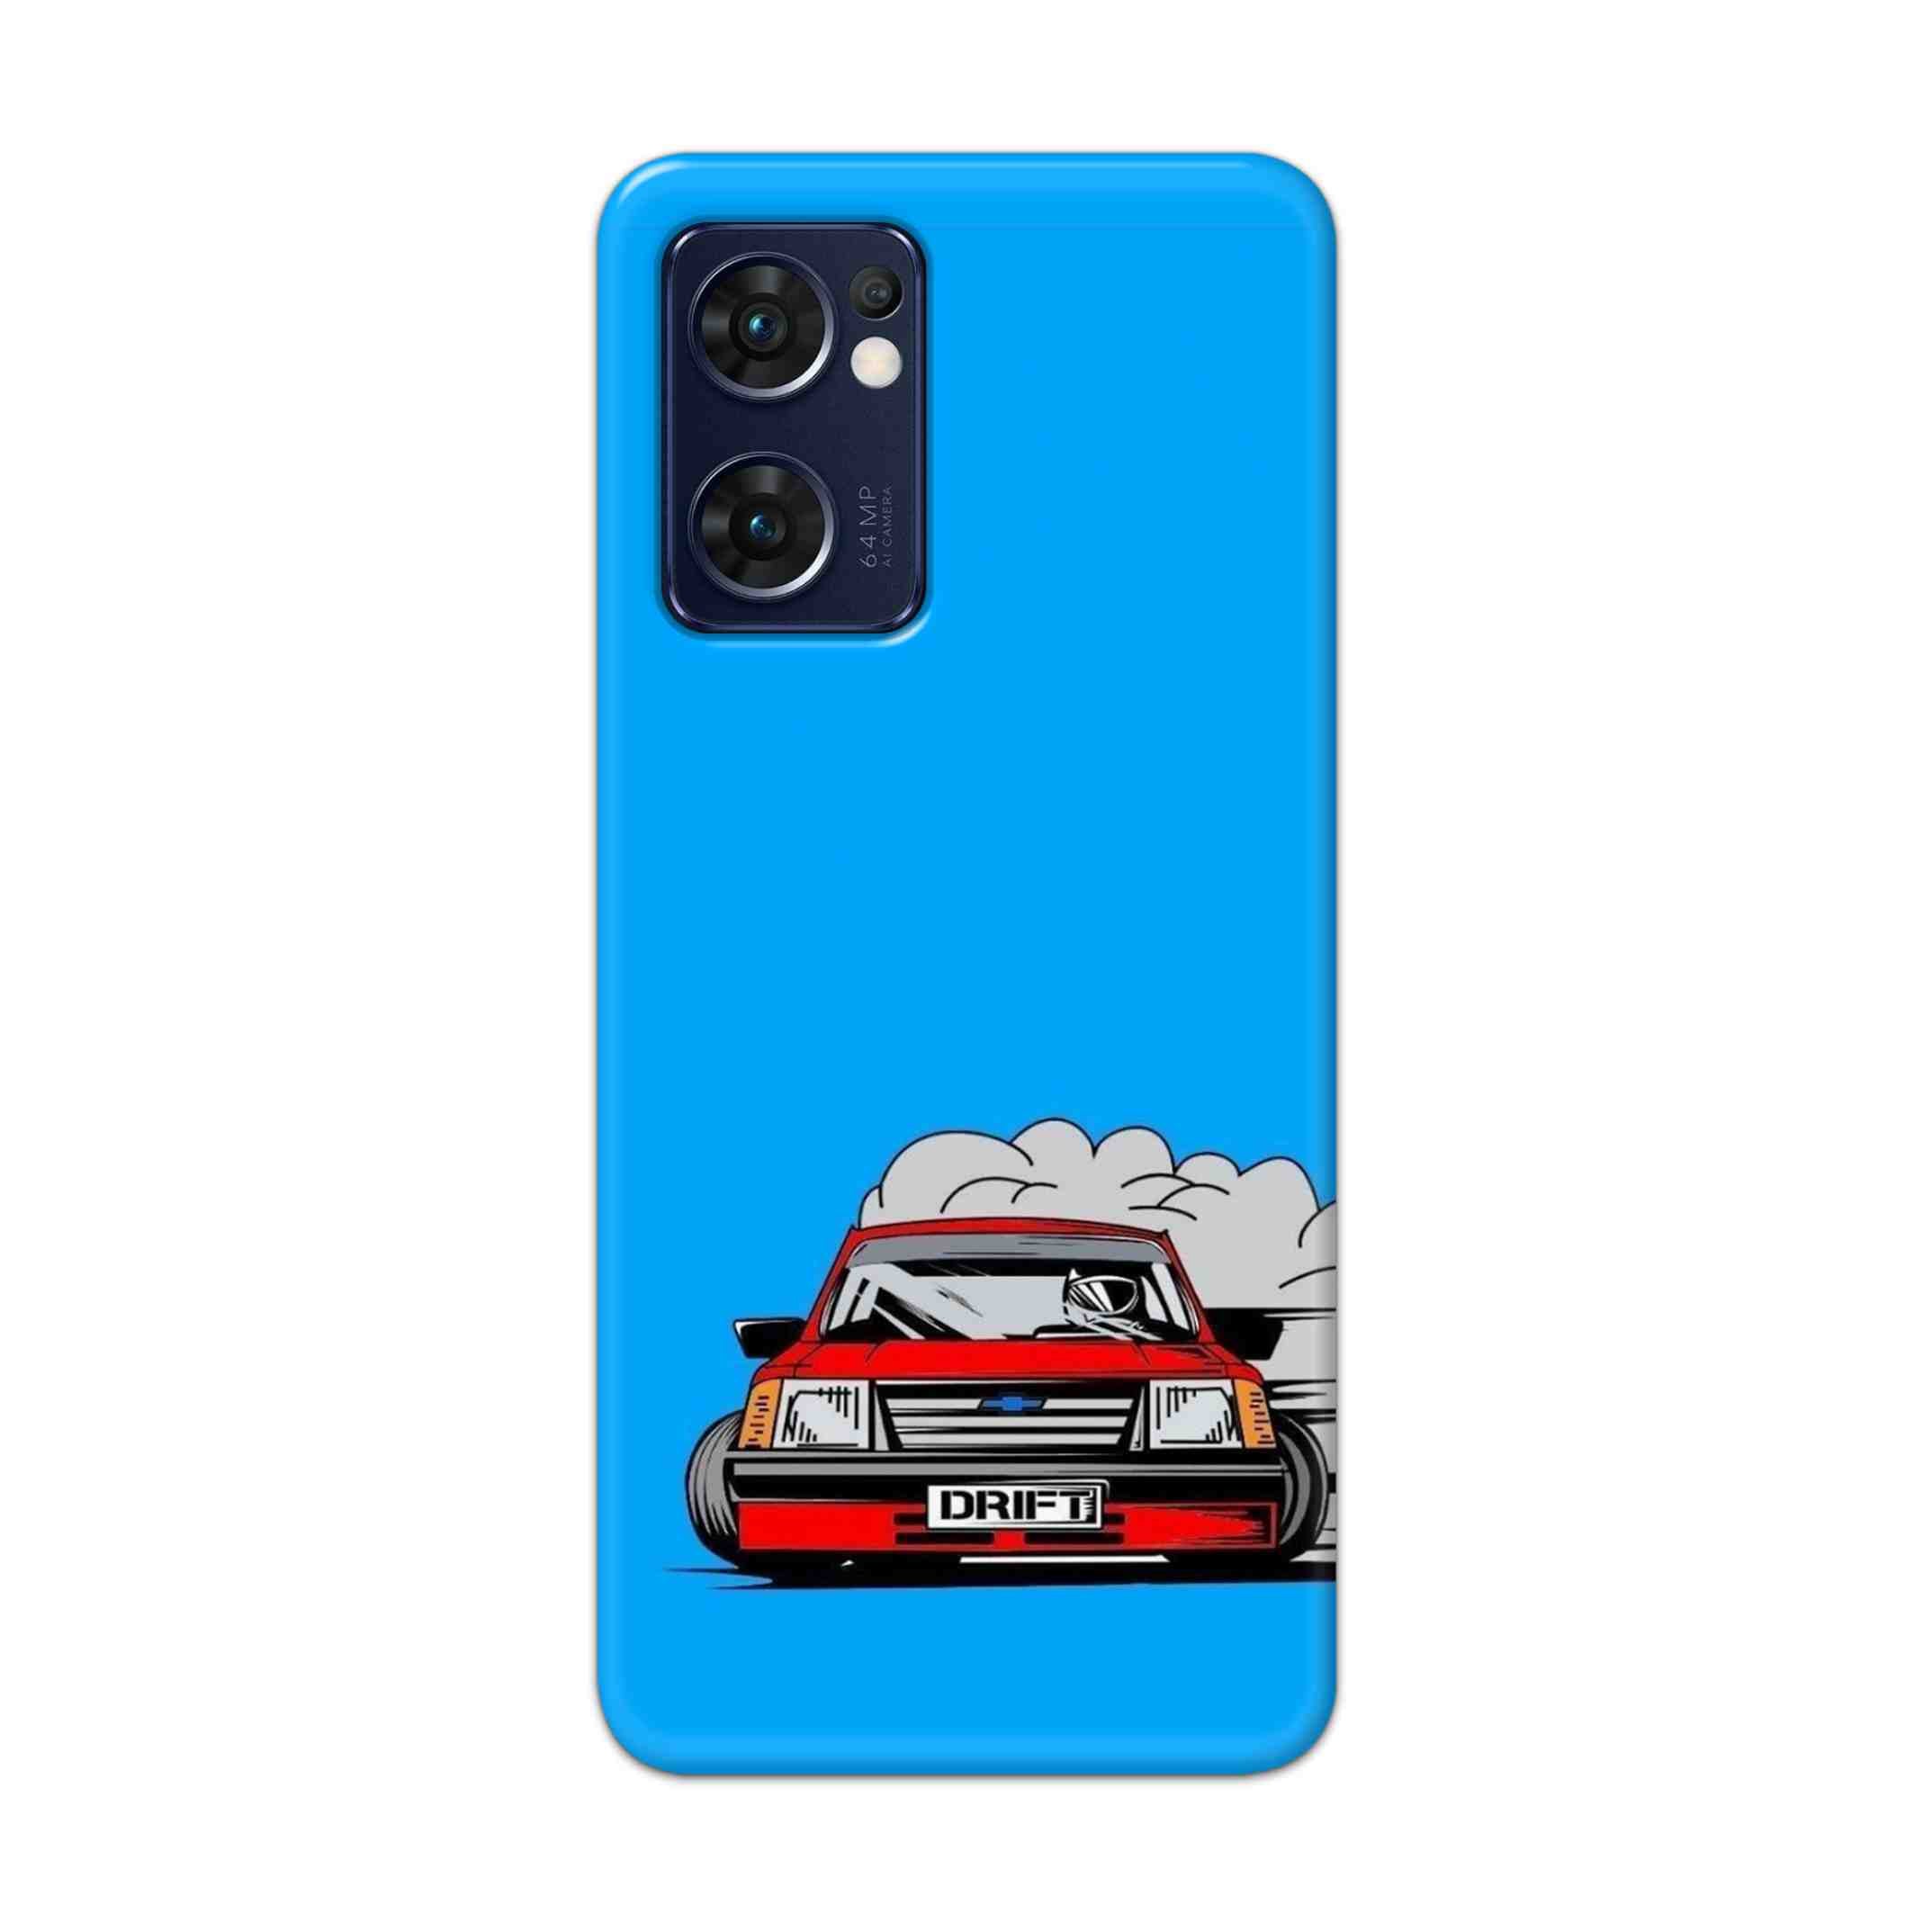 Buy Drift Hard Back Mobile Phone Case Cover For Reno 7 5G Online